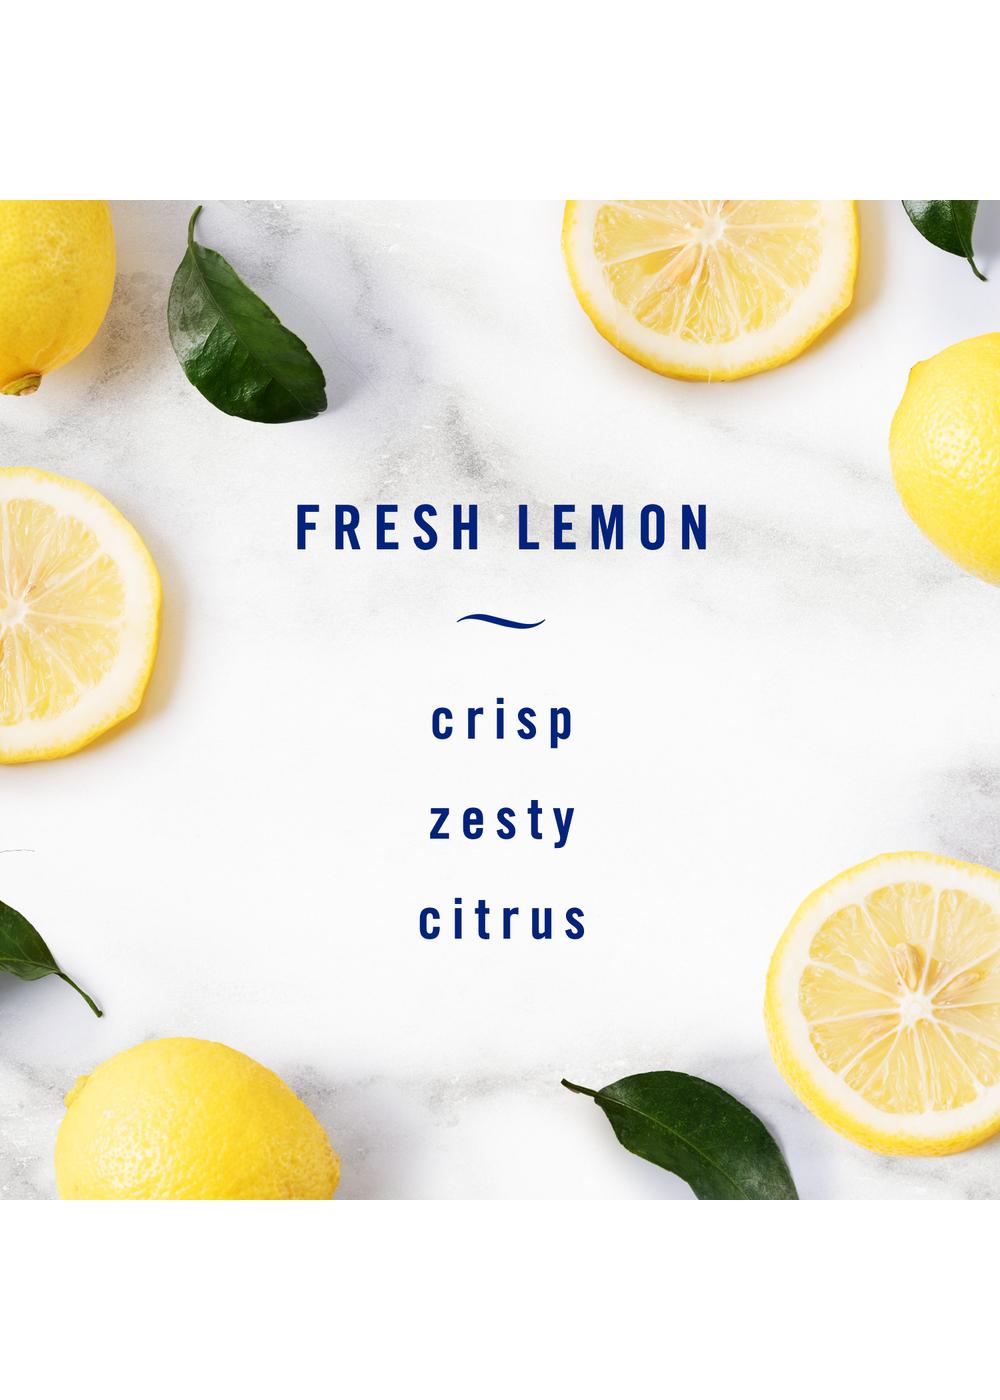 Febreze Air Kitchen Fresh Lemon Odor-Eliminating Spray Value Pack; image 5 of 9